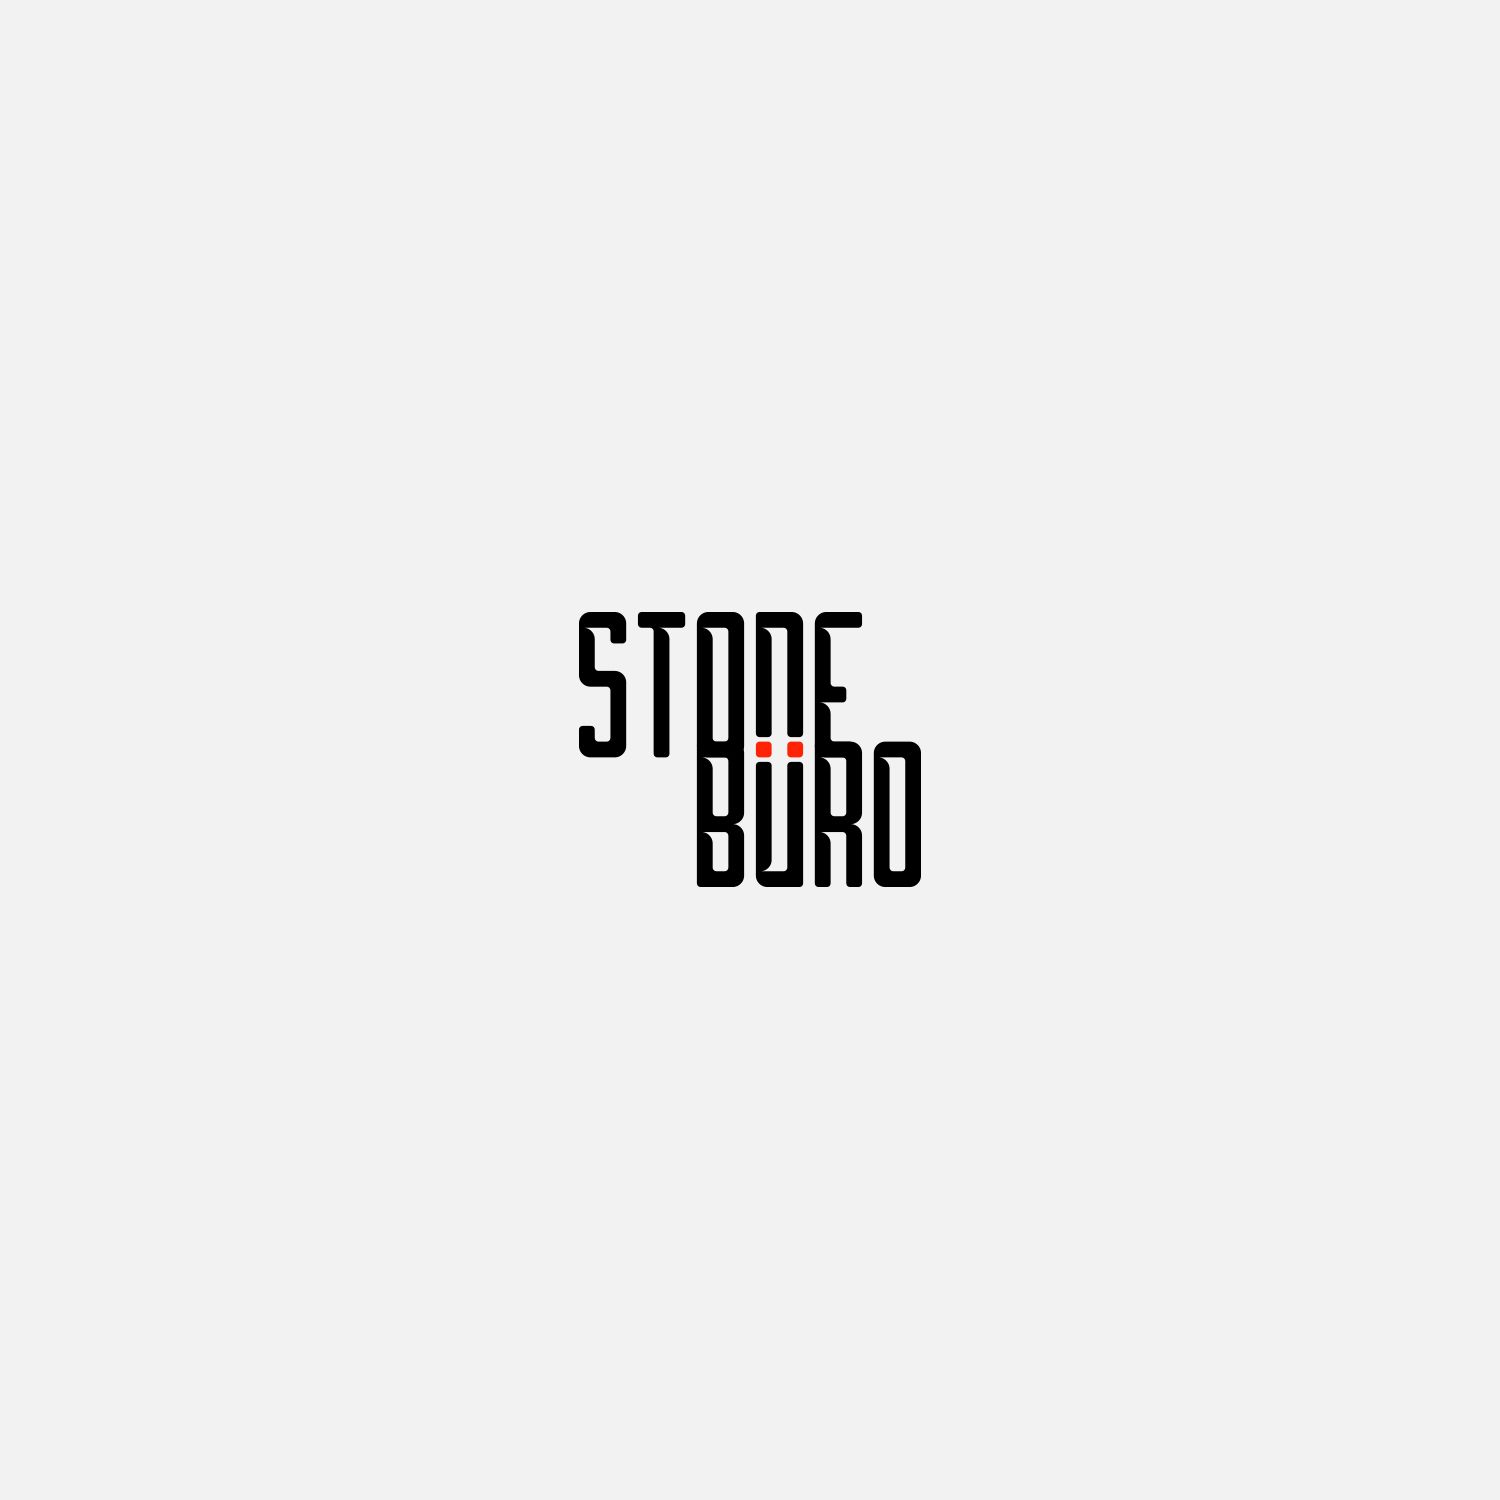 Лого и фирменный стиль для Stone Buro - дизайнер KIRILLRET